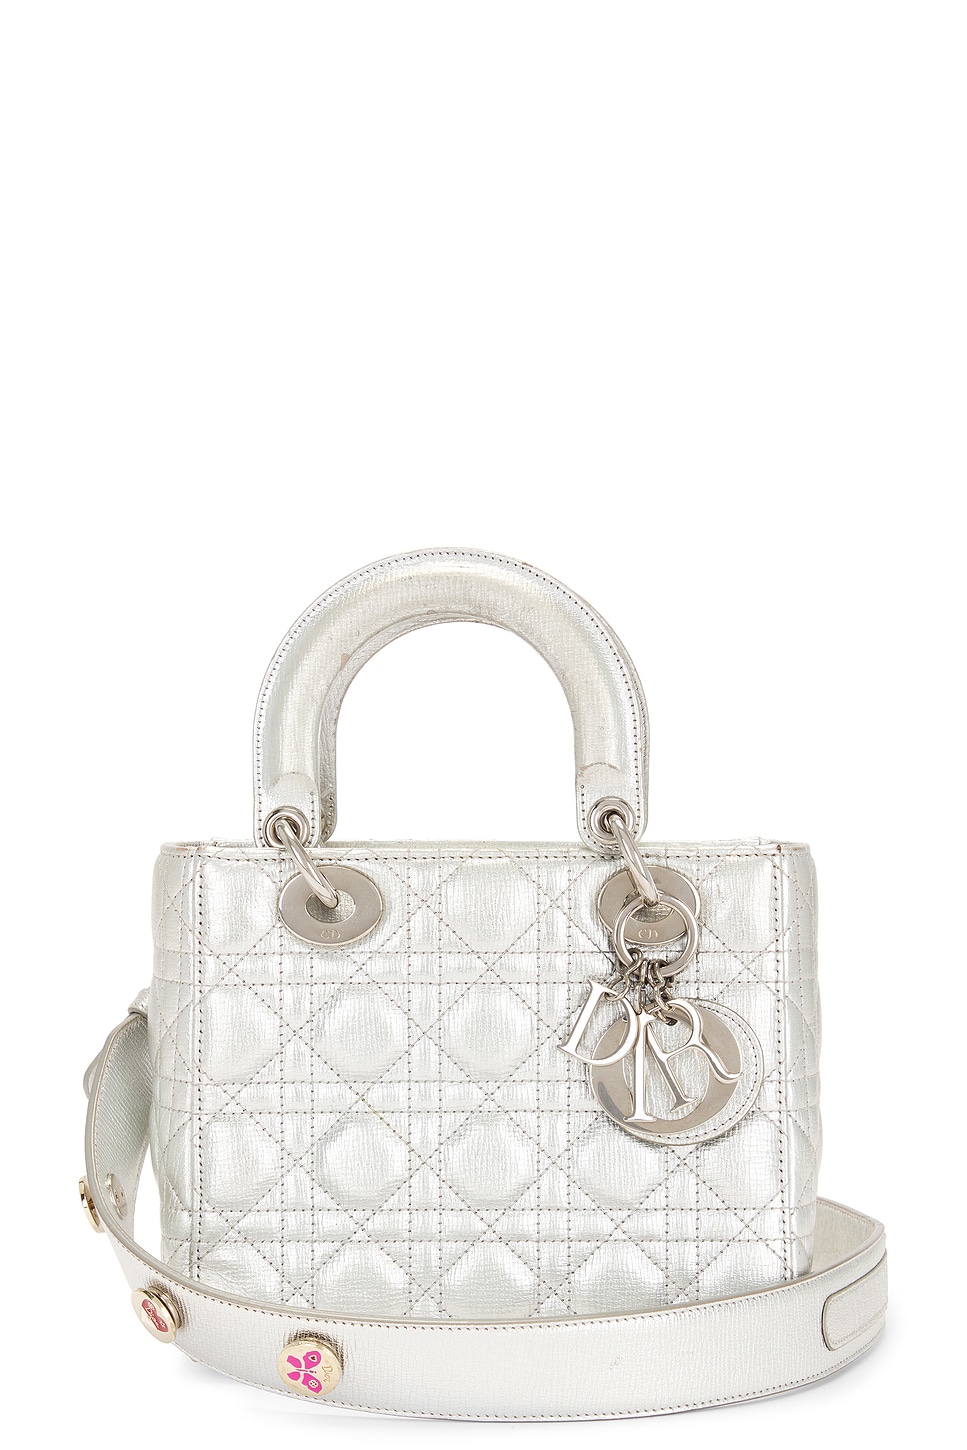 Dior Lady Cannage Handbag In Silver